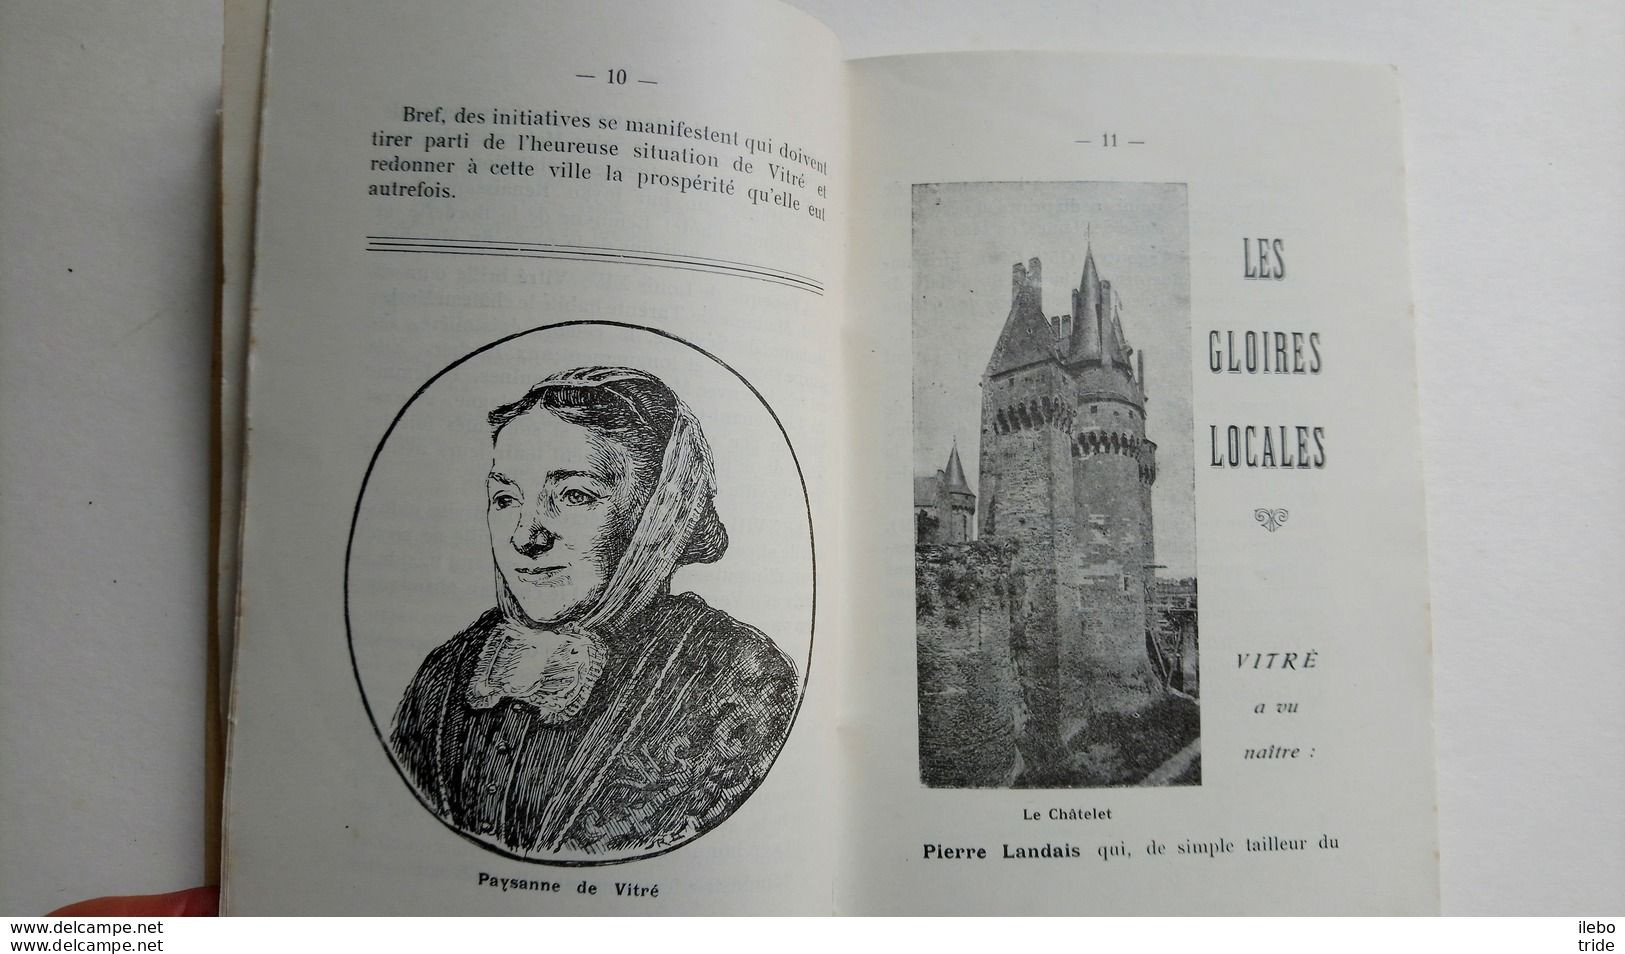 Vitré Et Ses Environs Guide Marcel Laillet 1933 Bretagne - Tourism Brochures